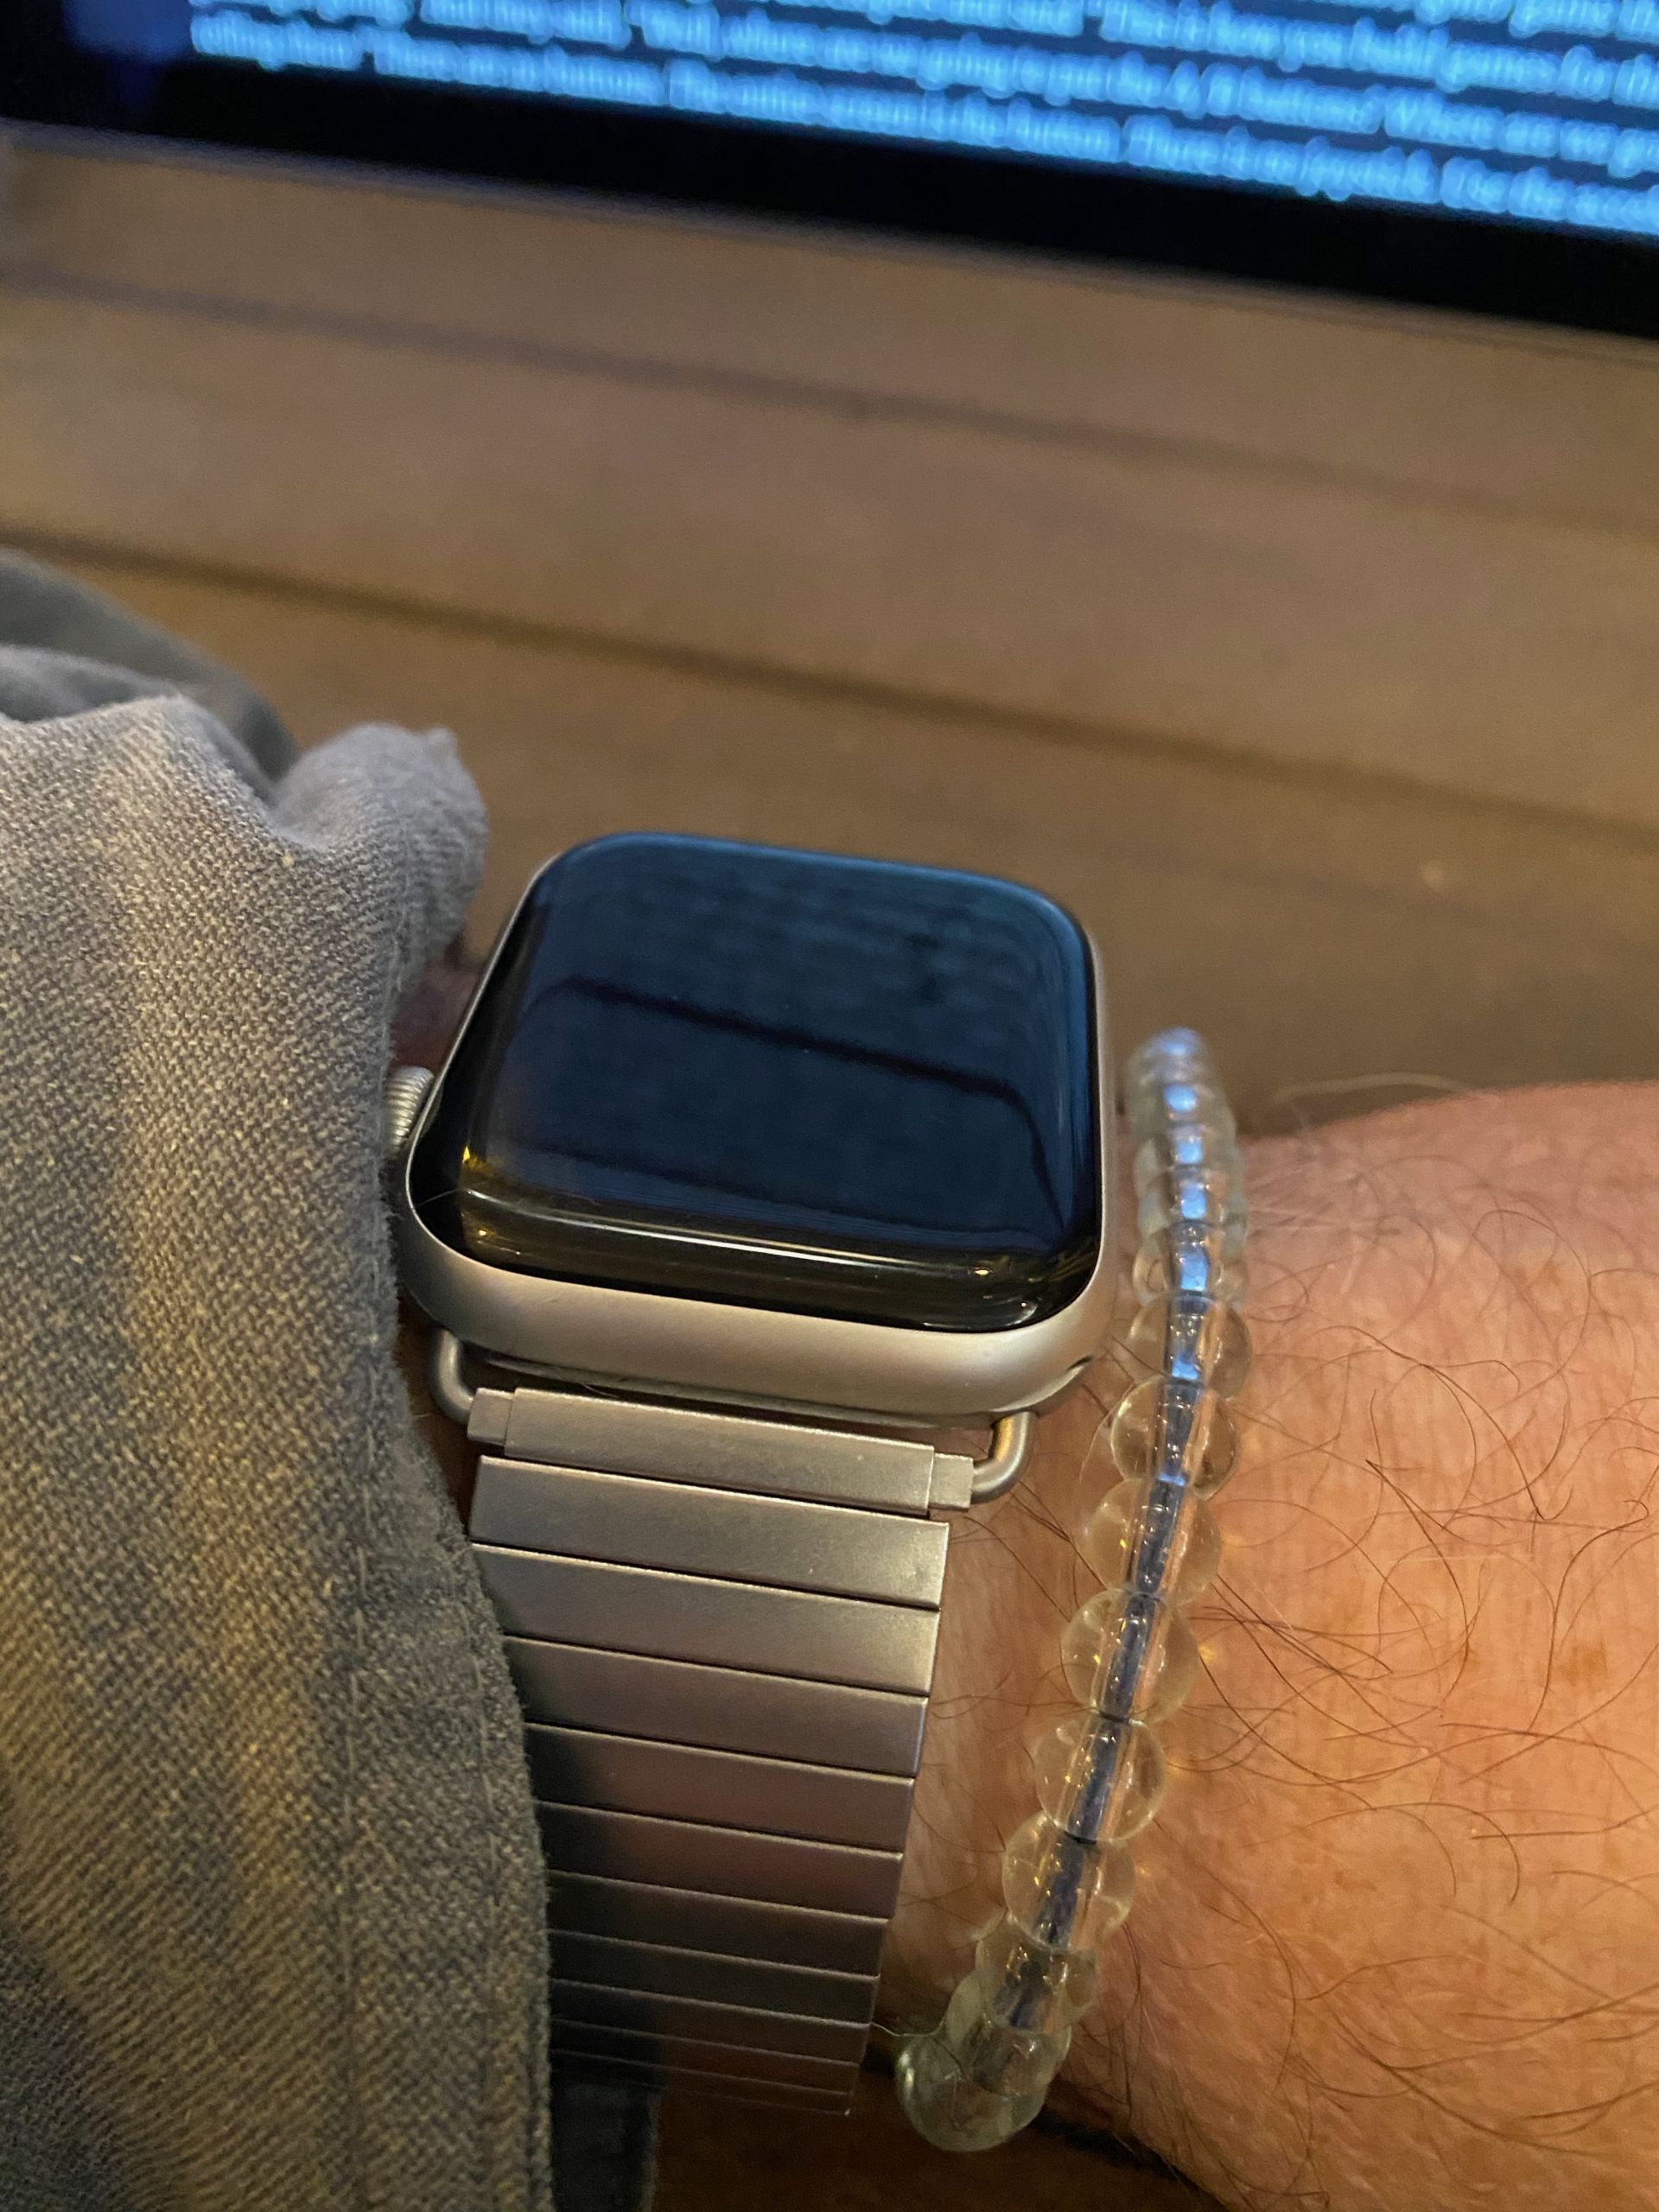 Future digital wrist watch with flexible smart screen by Kent Dechjun at  Coroflot.com